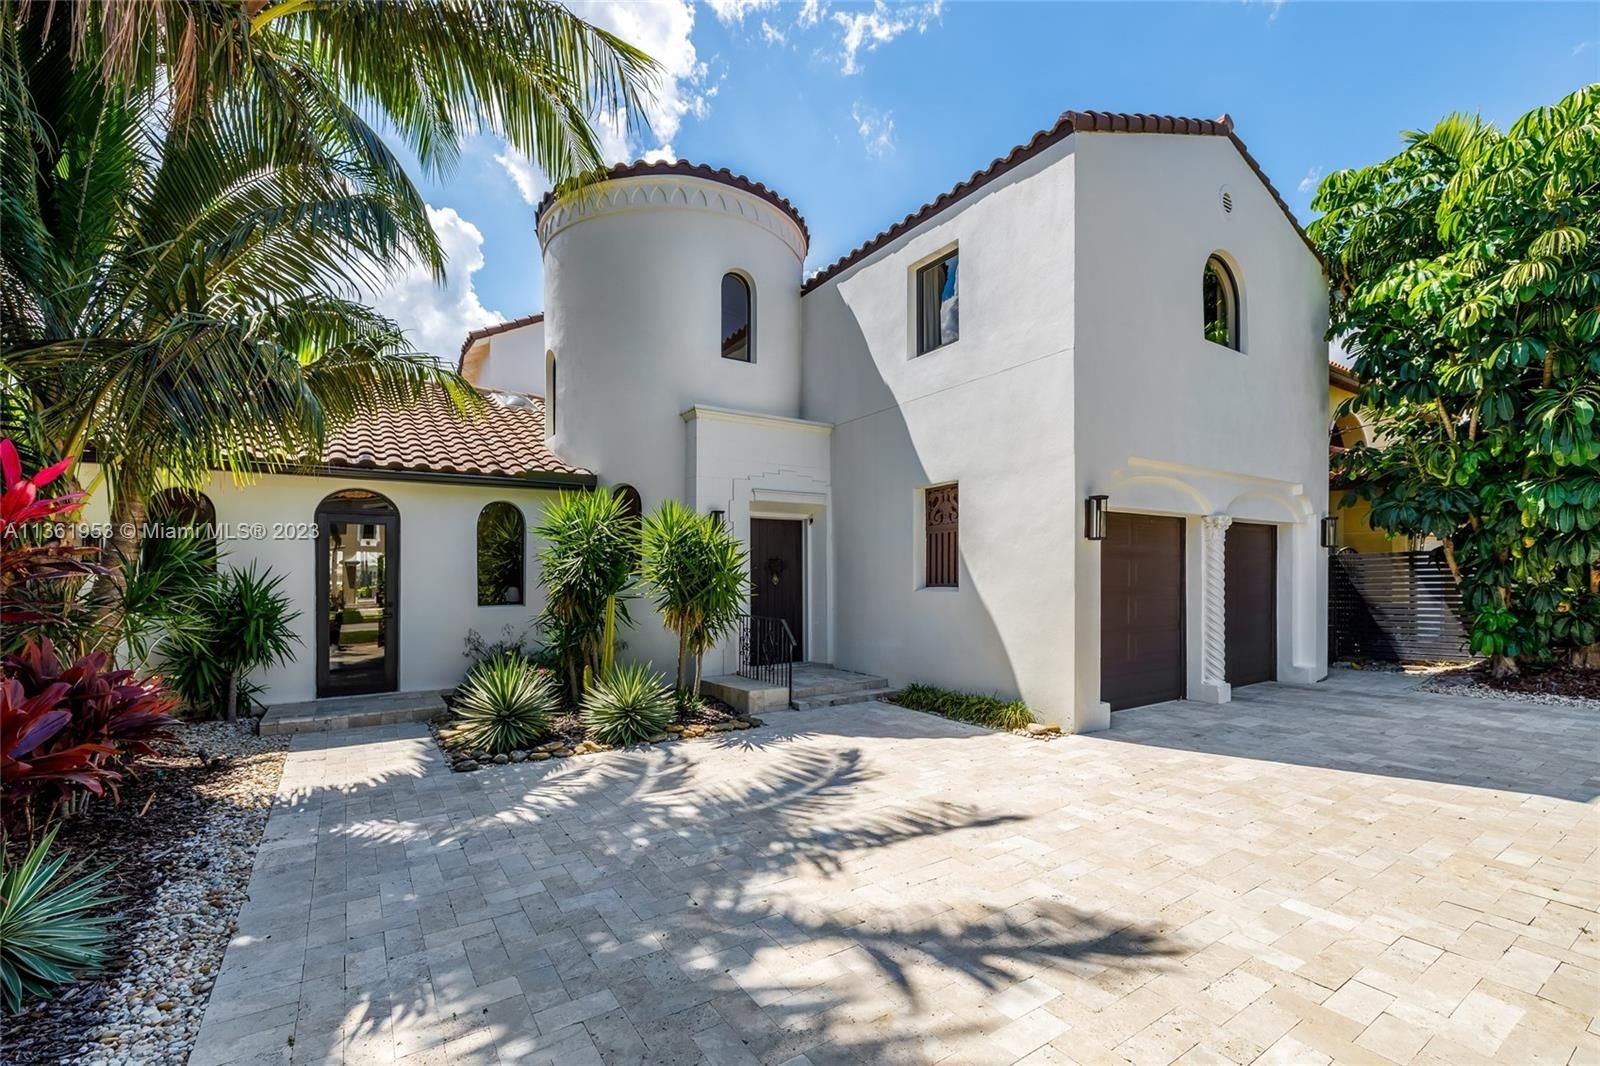 Real estate property located at 5736 La Gorce Dr, Miami-Dade County, Miami Beach, FL